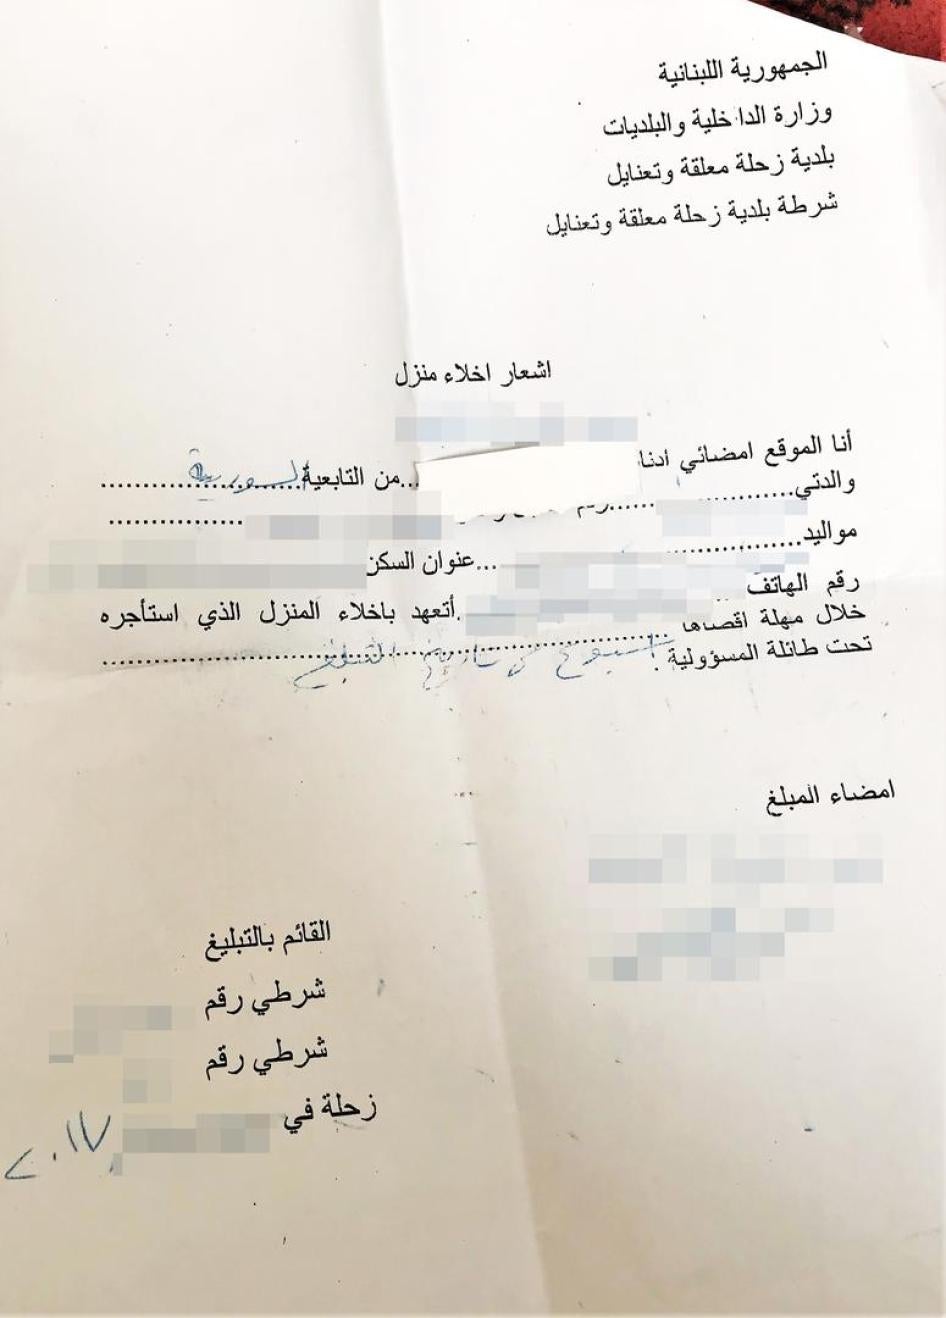 إشعار إخلاء من بلدية زحلة قال اللاجئون السوريون إنهم أُجبروا على توقيعه متعهدين بإخلاء منزلهم الحالي في غضون أسبوع. محينا المعلومات المعرّفة بالأشخاص. 